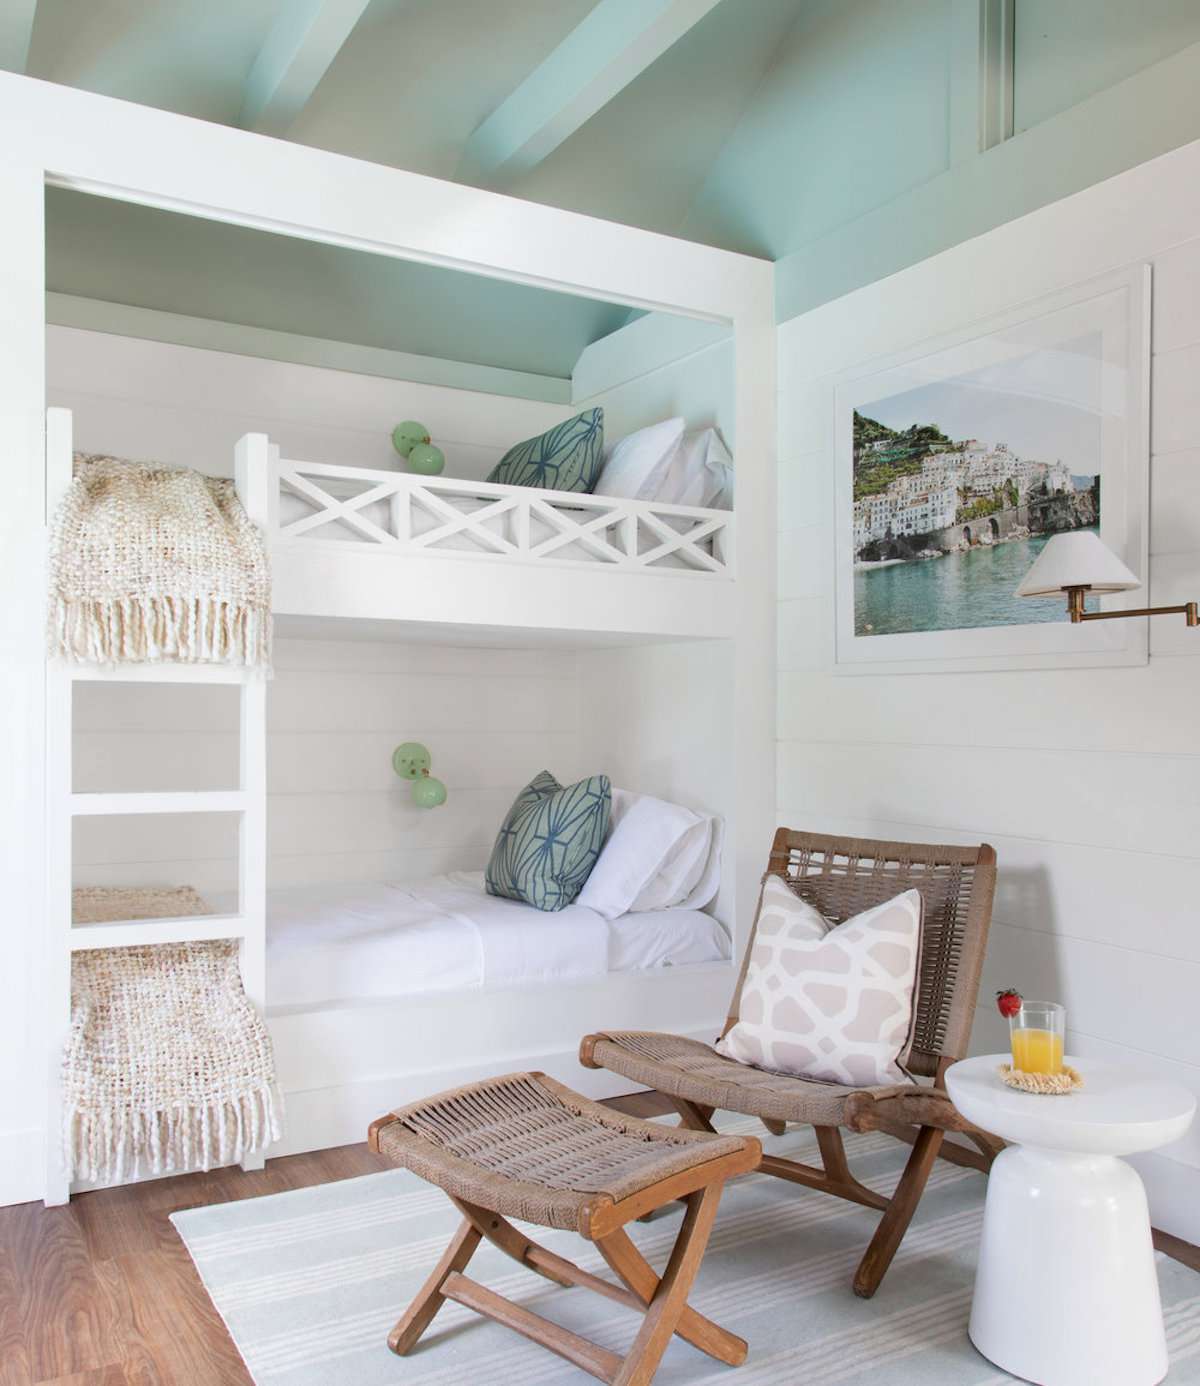 Schlafzimmer mit Etagenbetten, blaugrüne Decke mit sichtbaren Holzbalken, weiße Wände, brauner Korbstuhl mit Fußhocker